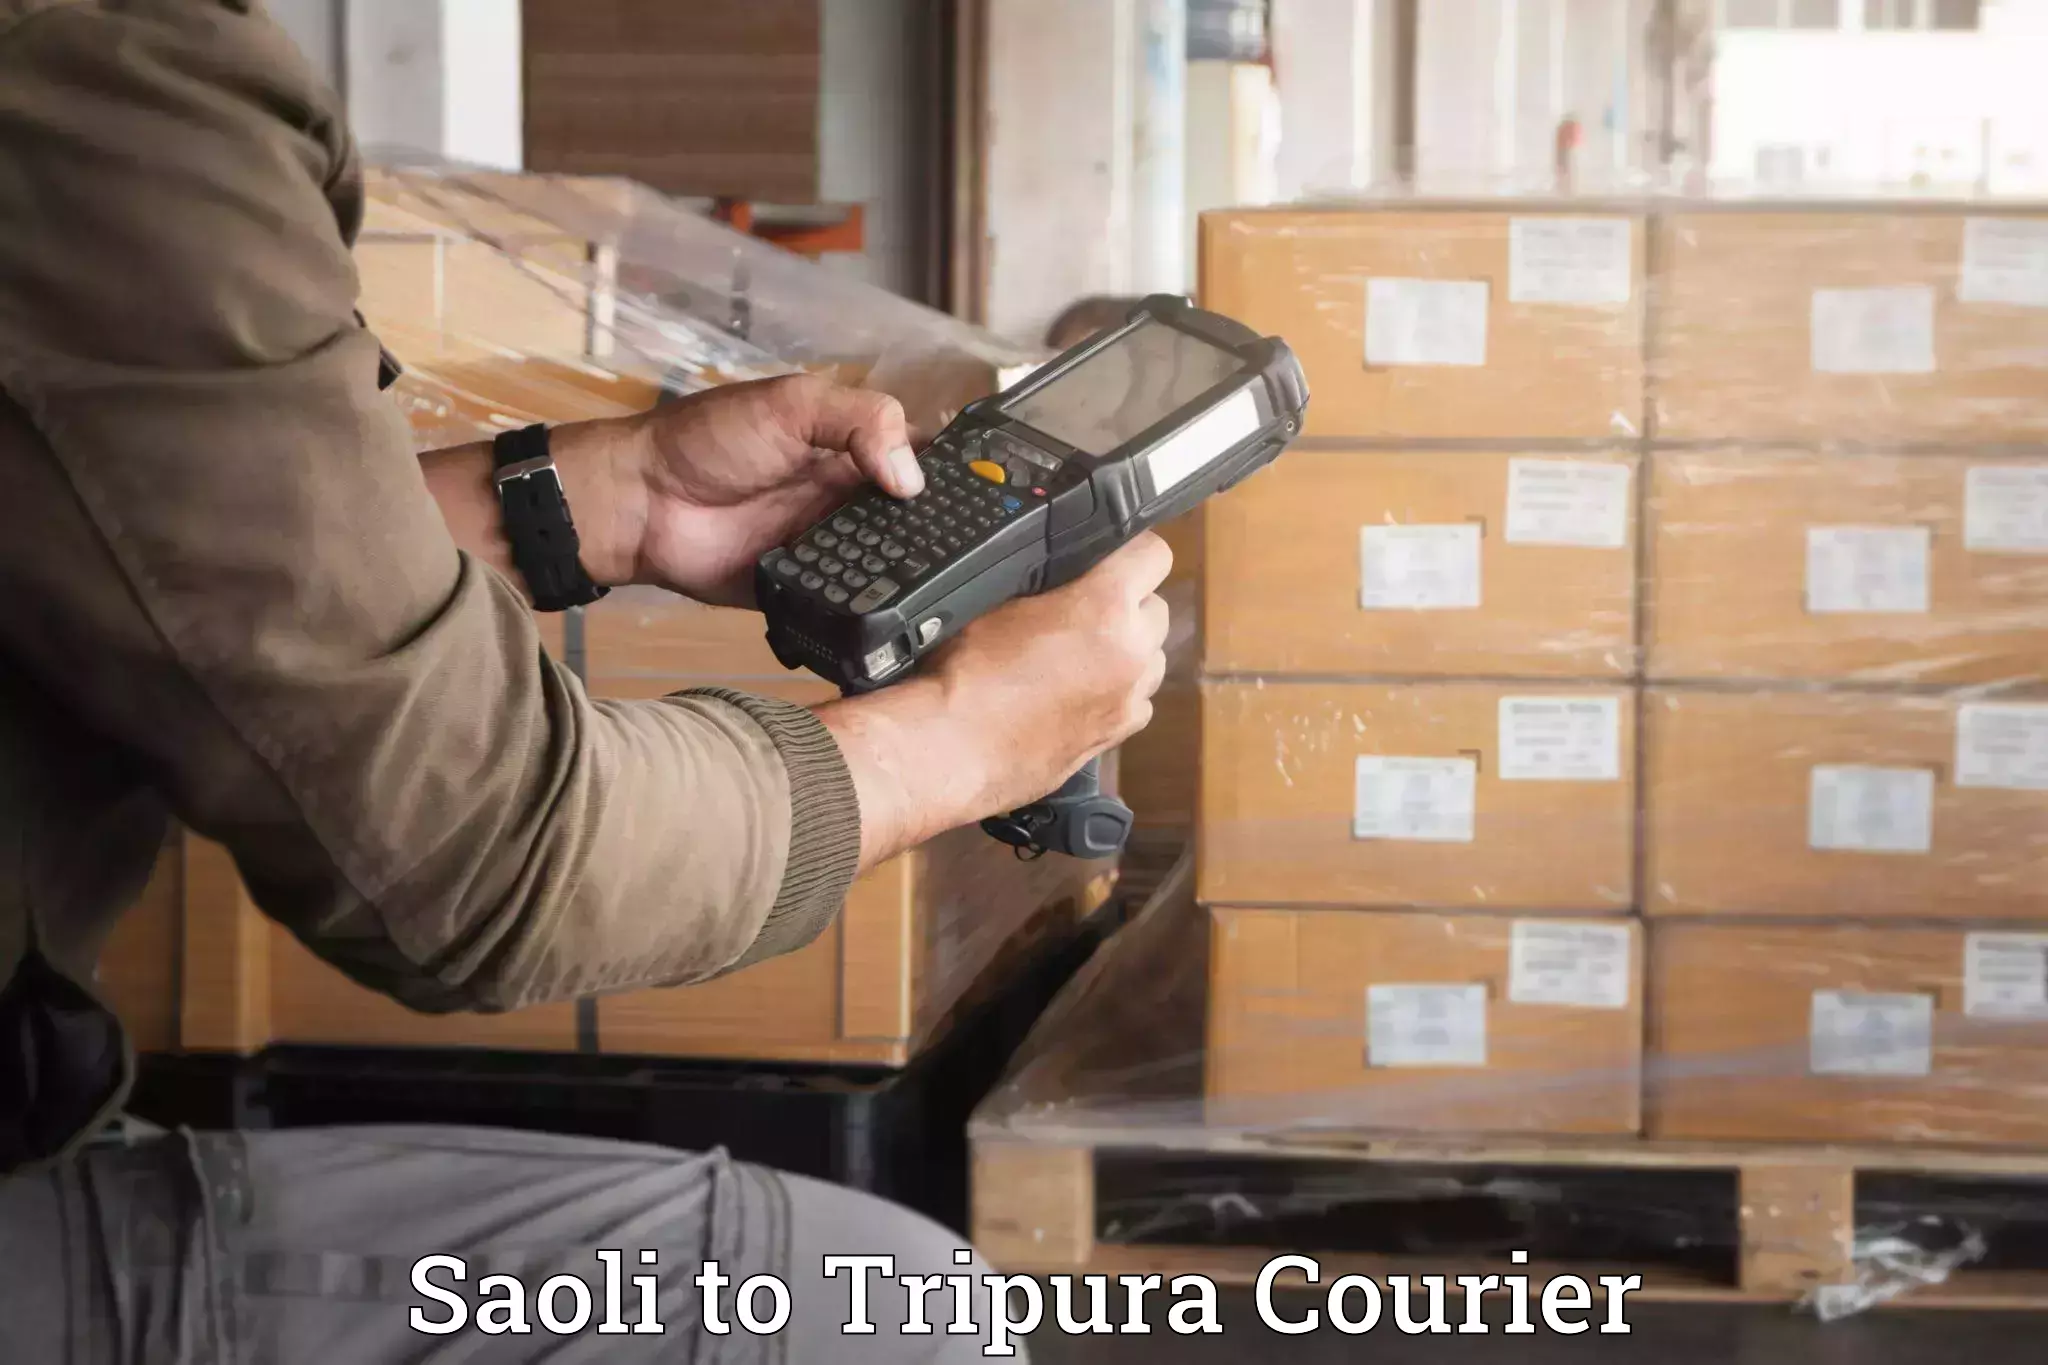 Luggage shipment specialists Saoli to West Tripura